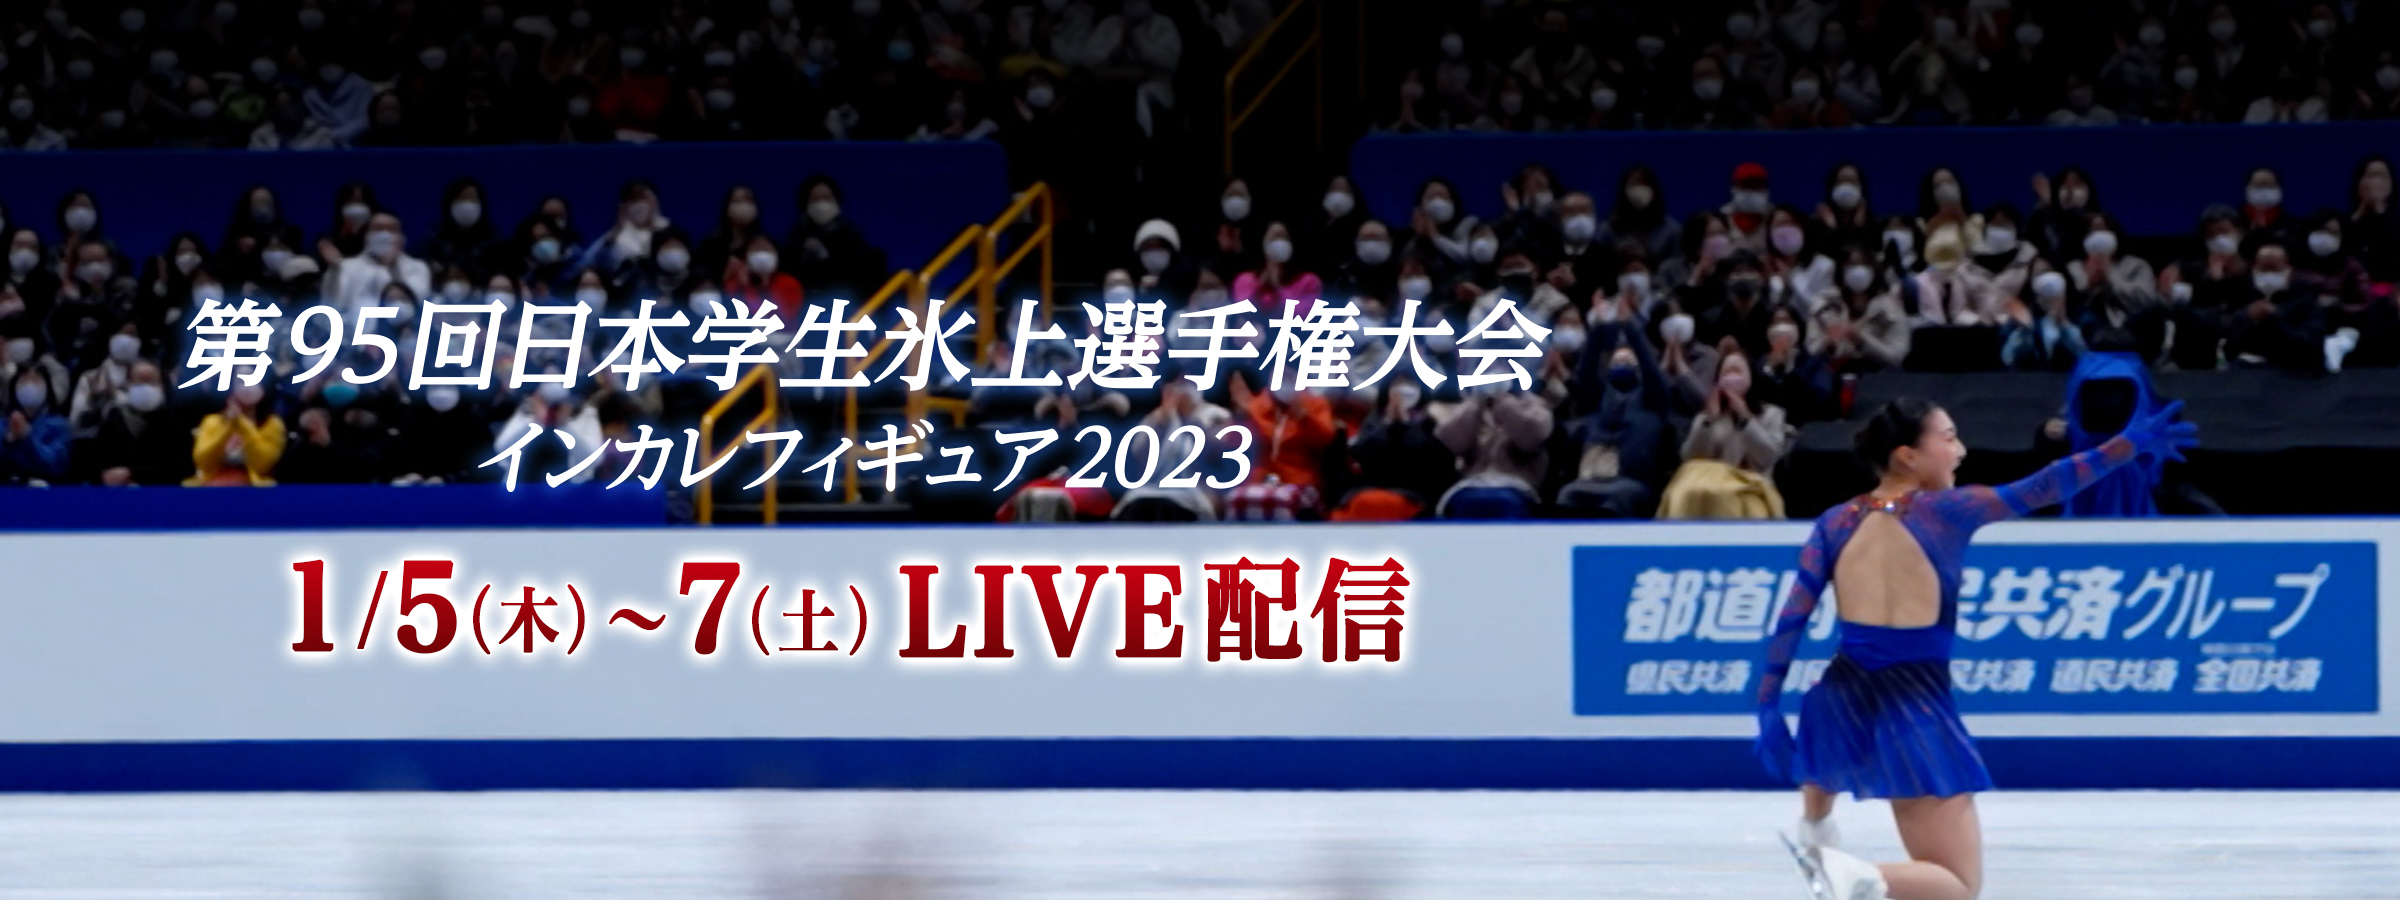 大学生たちのフィギュアスケート日本一を決める戦い『第95回日本学生氷上選手権大会』全演技をLIVE配信